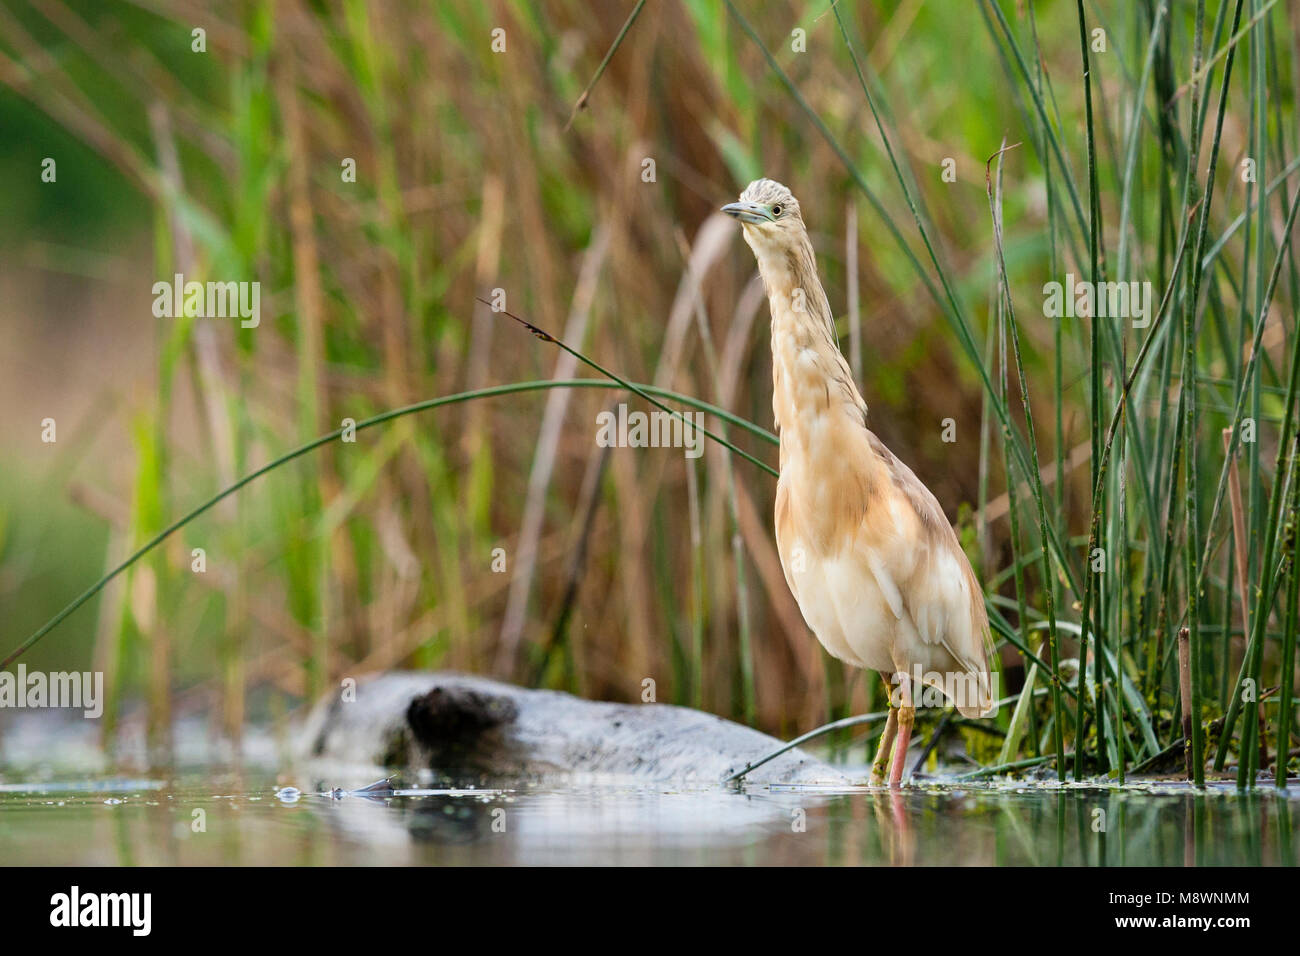 Ralreiger volwassen staand bij waterkant; Squacco Heron adult standing at waterside Stock Photo